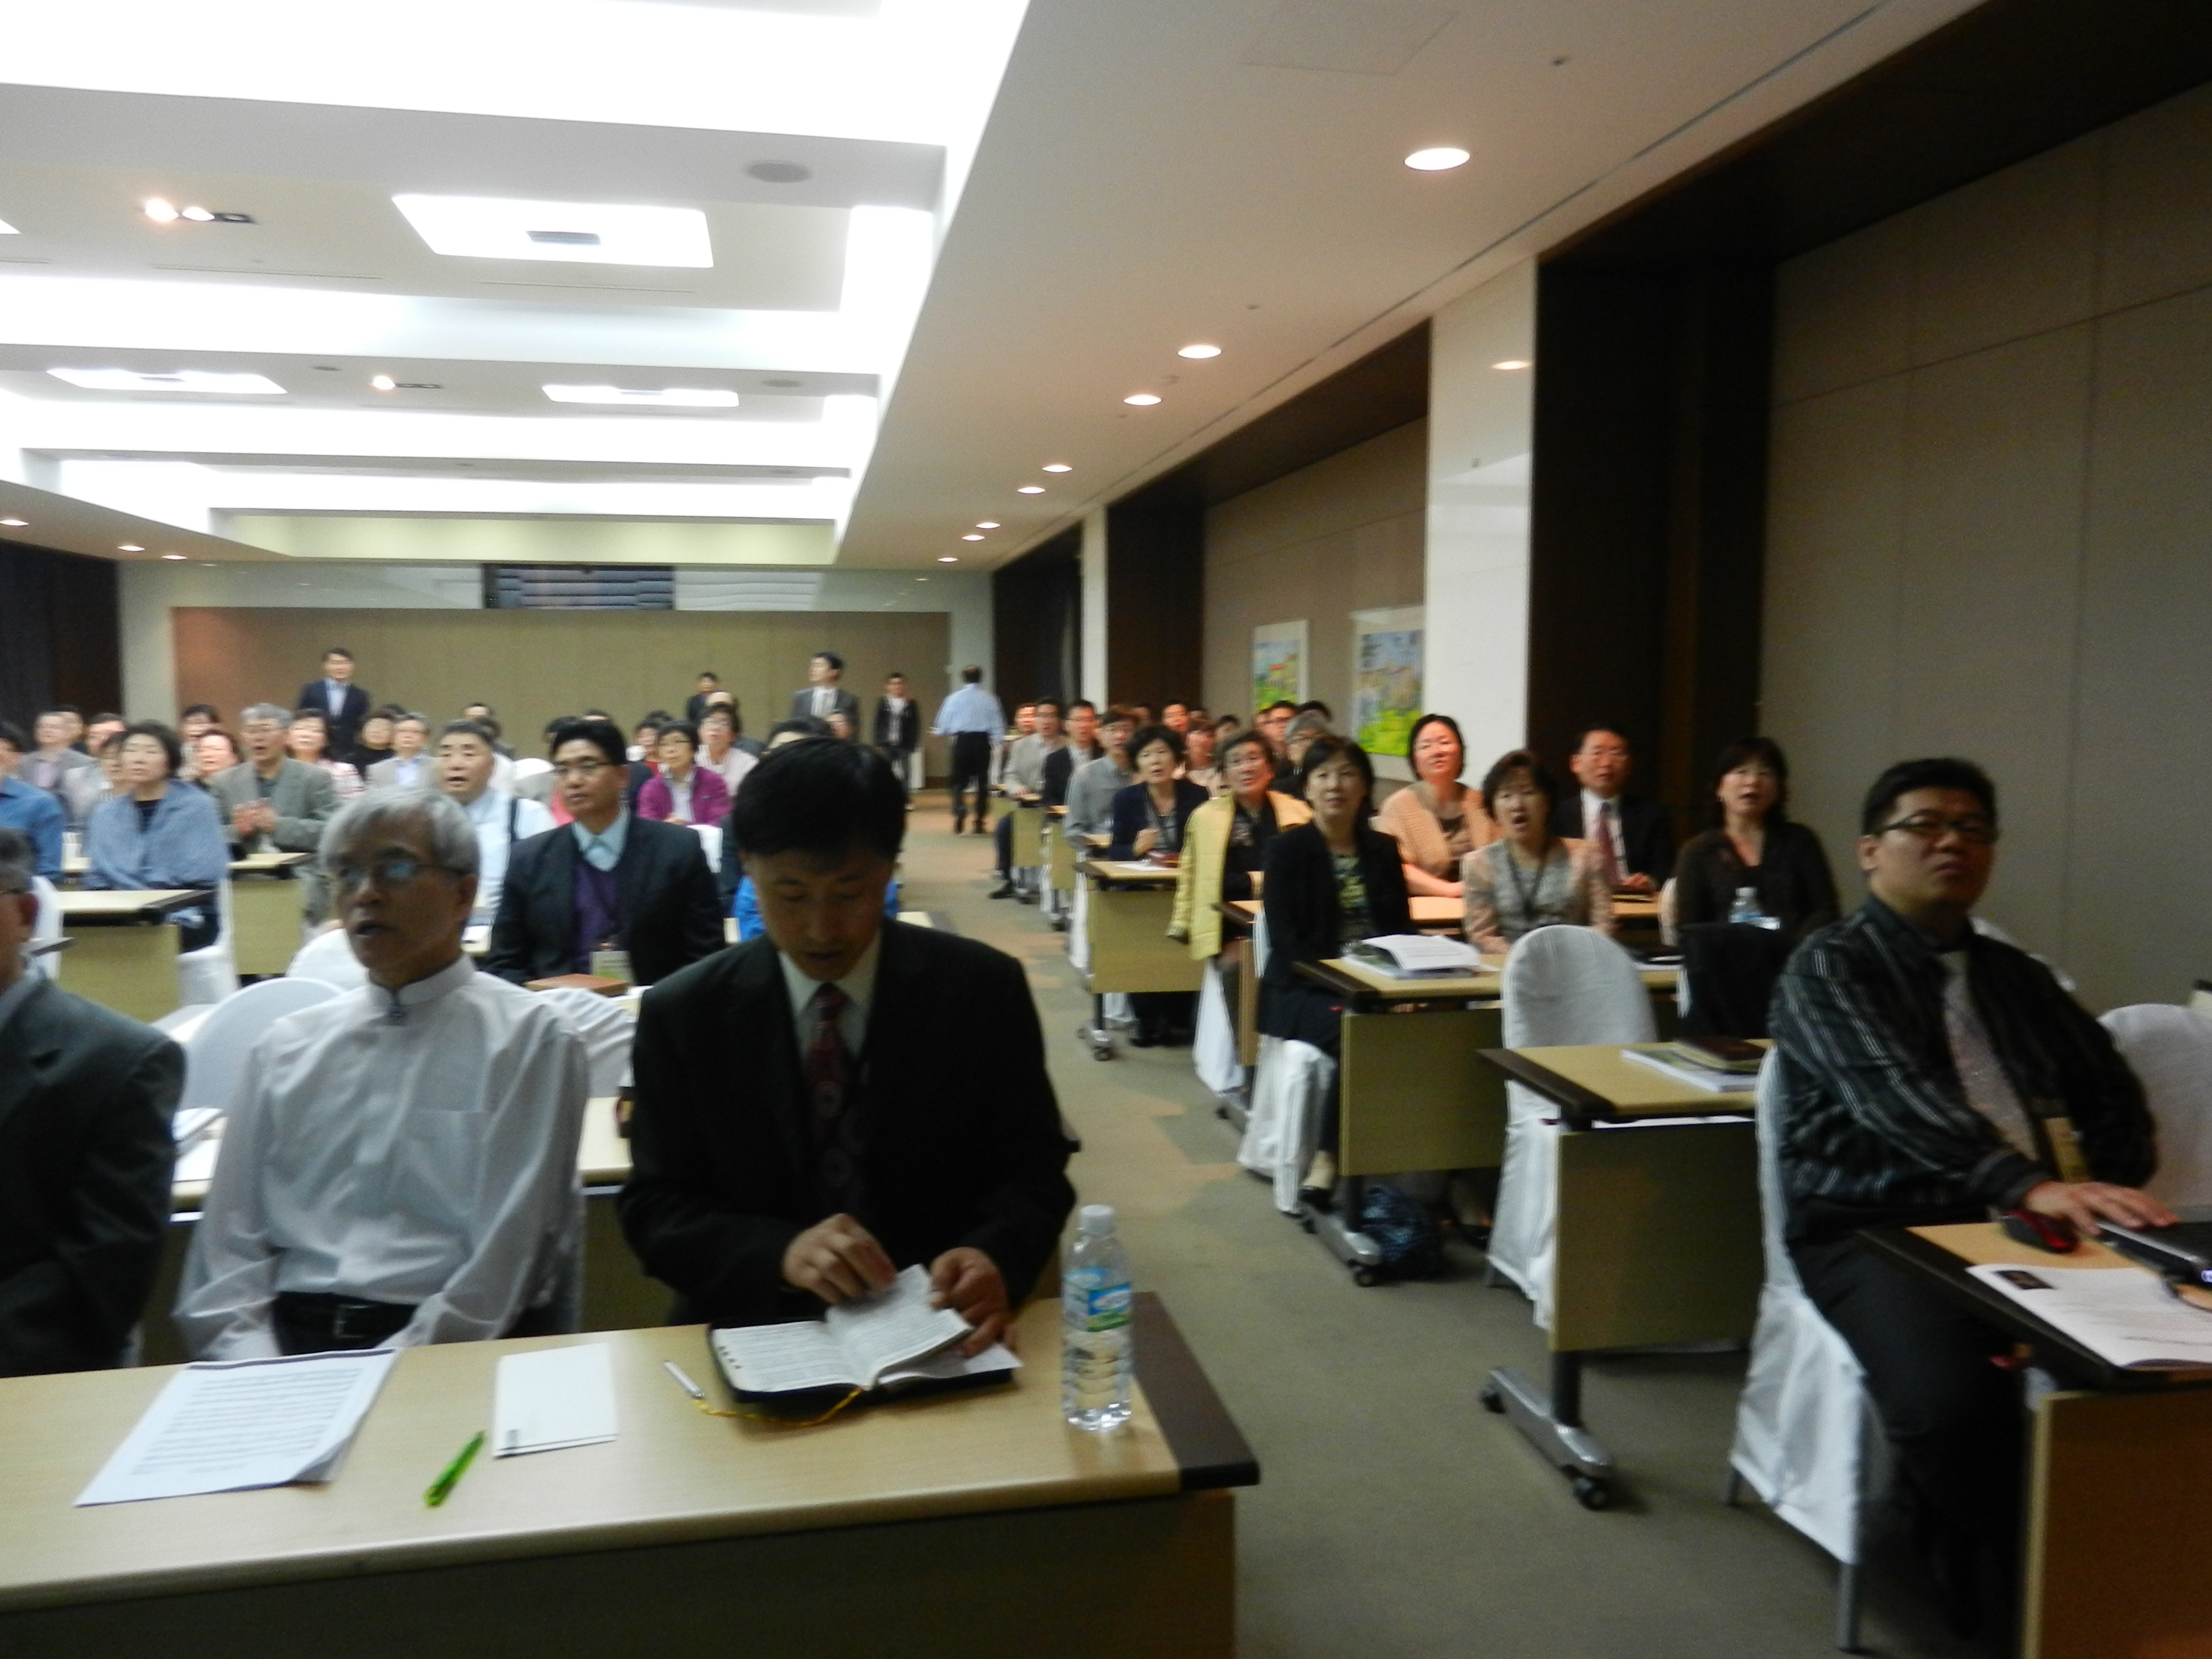 DSCN0990.JPG : Korean District Conference April 17-21, 2012 in Jeju Island, Korea